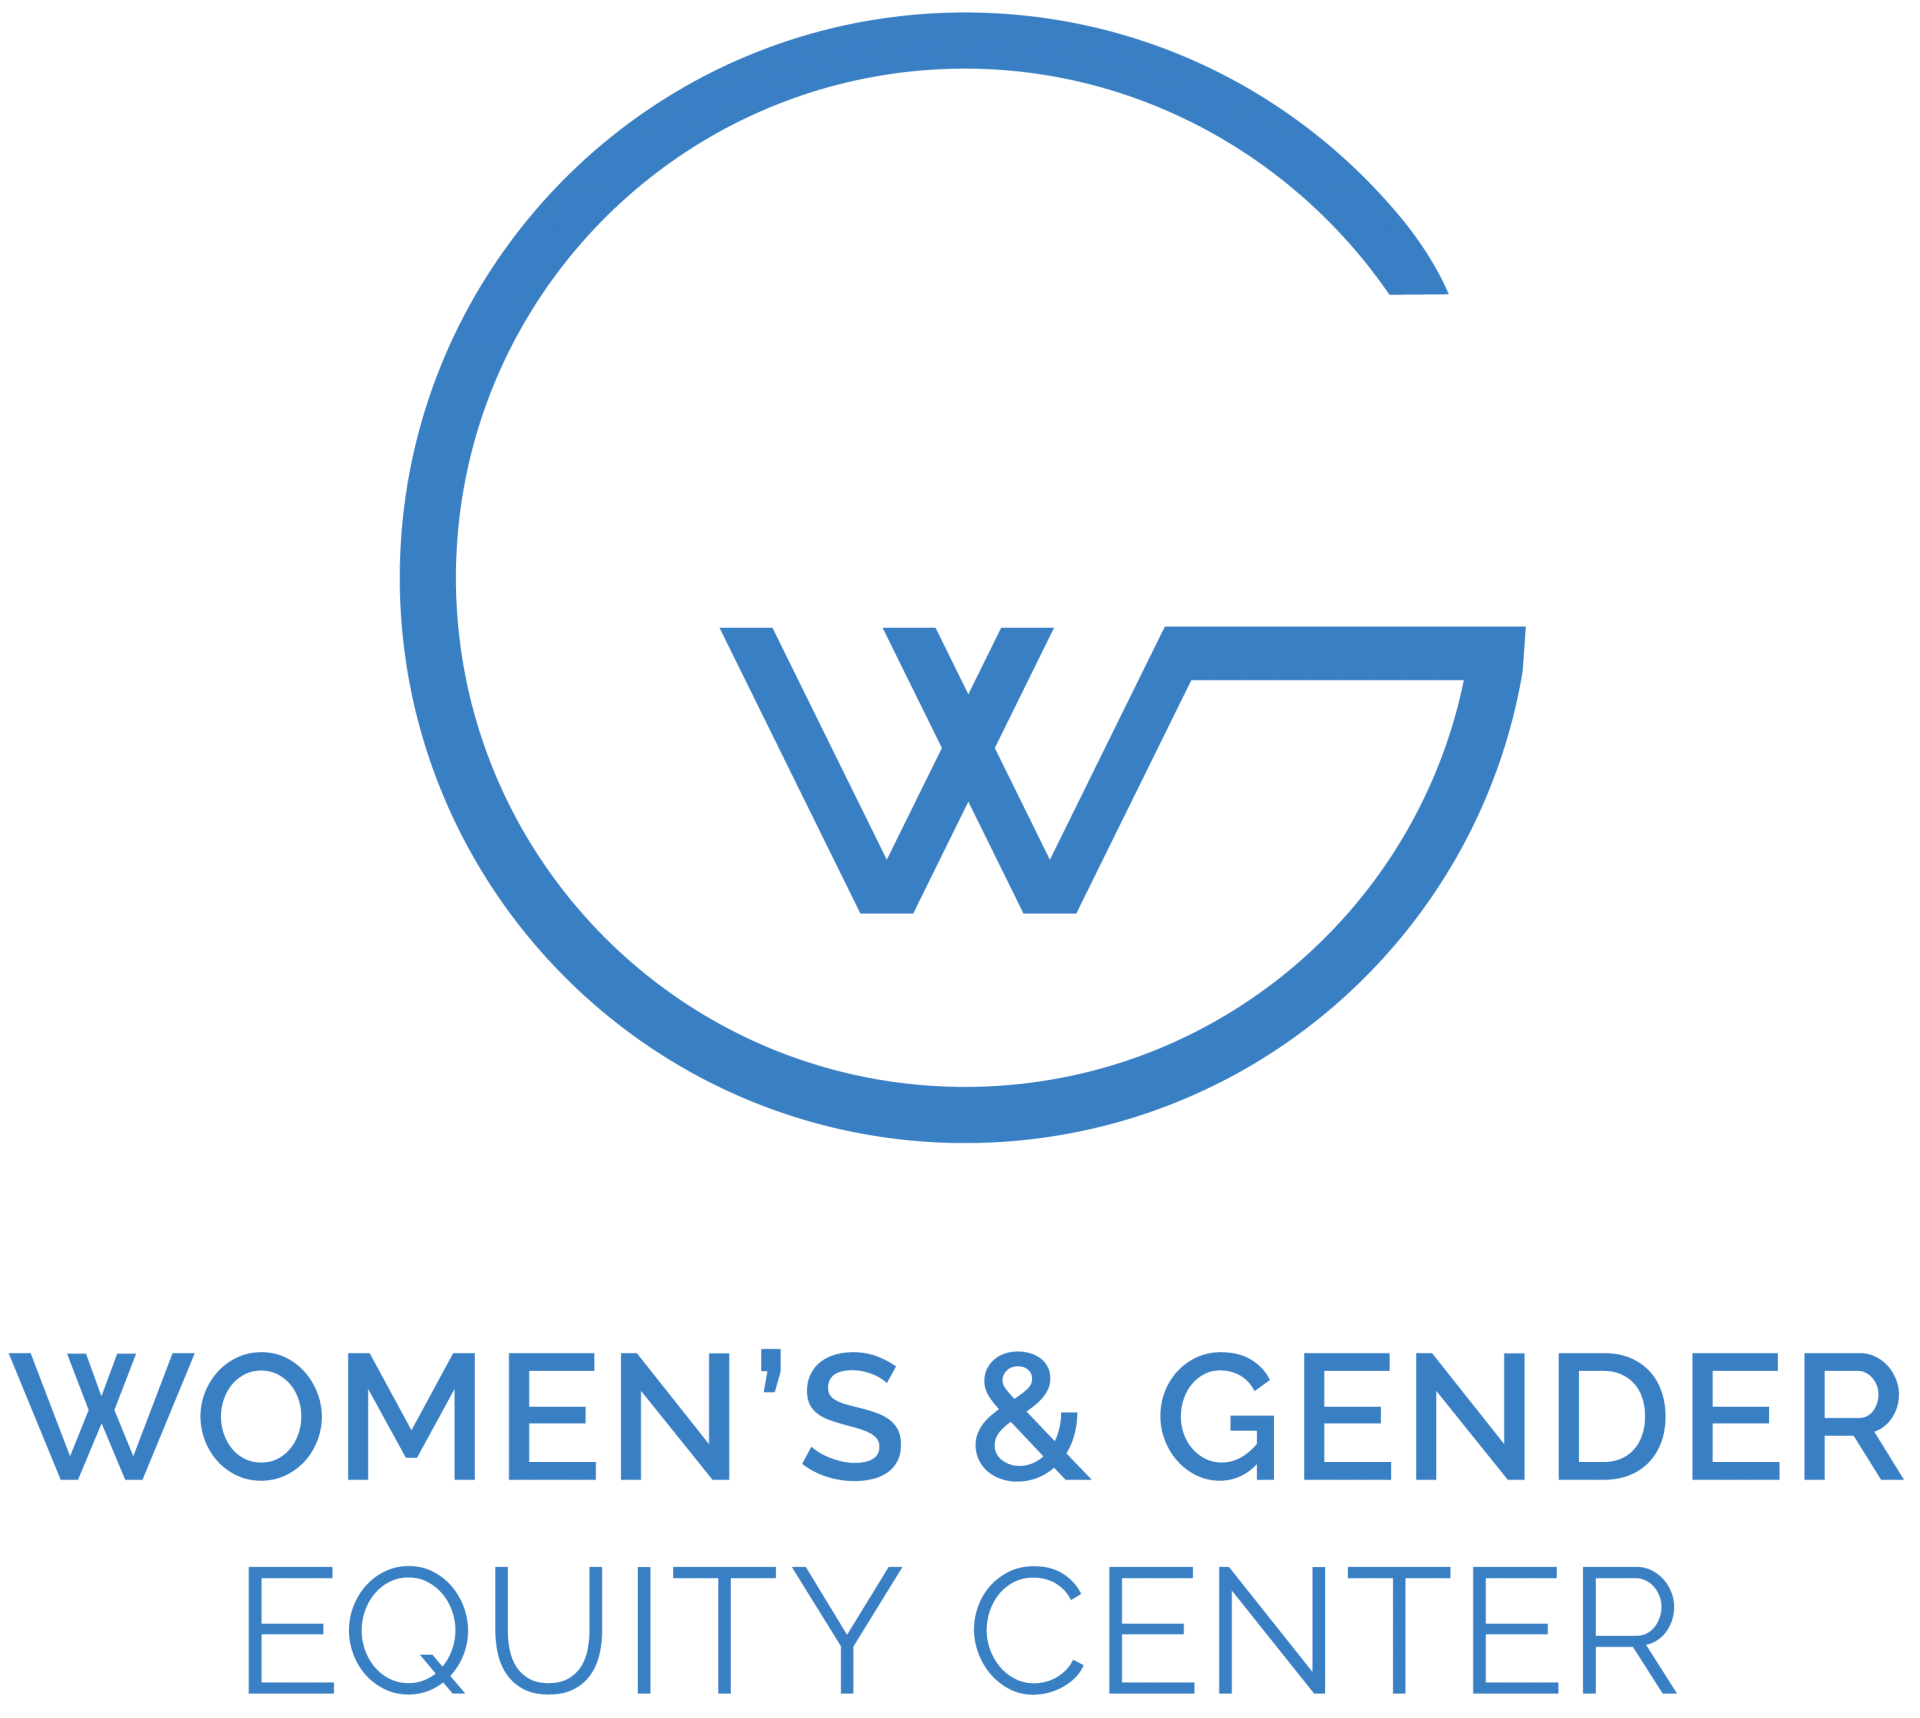 Wonmen's & Gender Equity Center